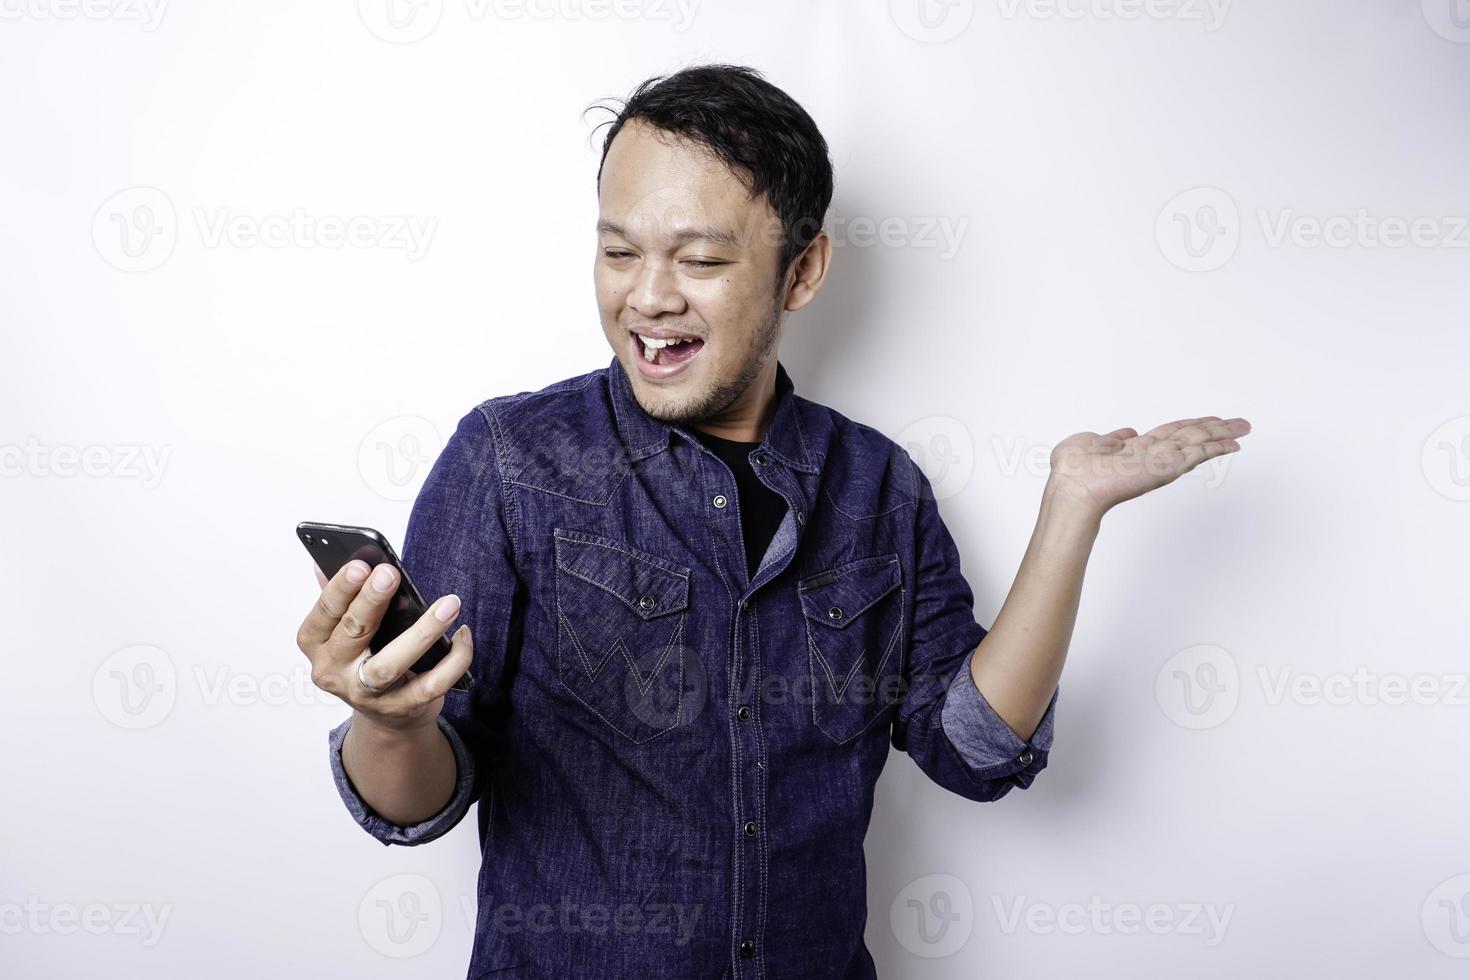 homem asiático animado vestindo camisa azul apontando para o espaço da cópia ao lado dele enquanto segura o telefone, isolado pelo fundo branco foto